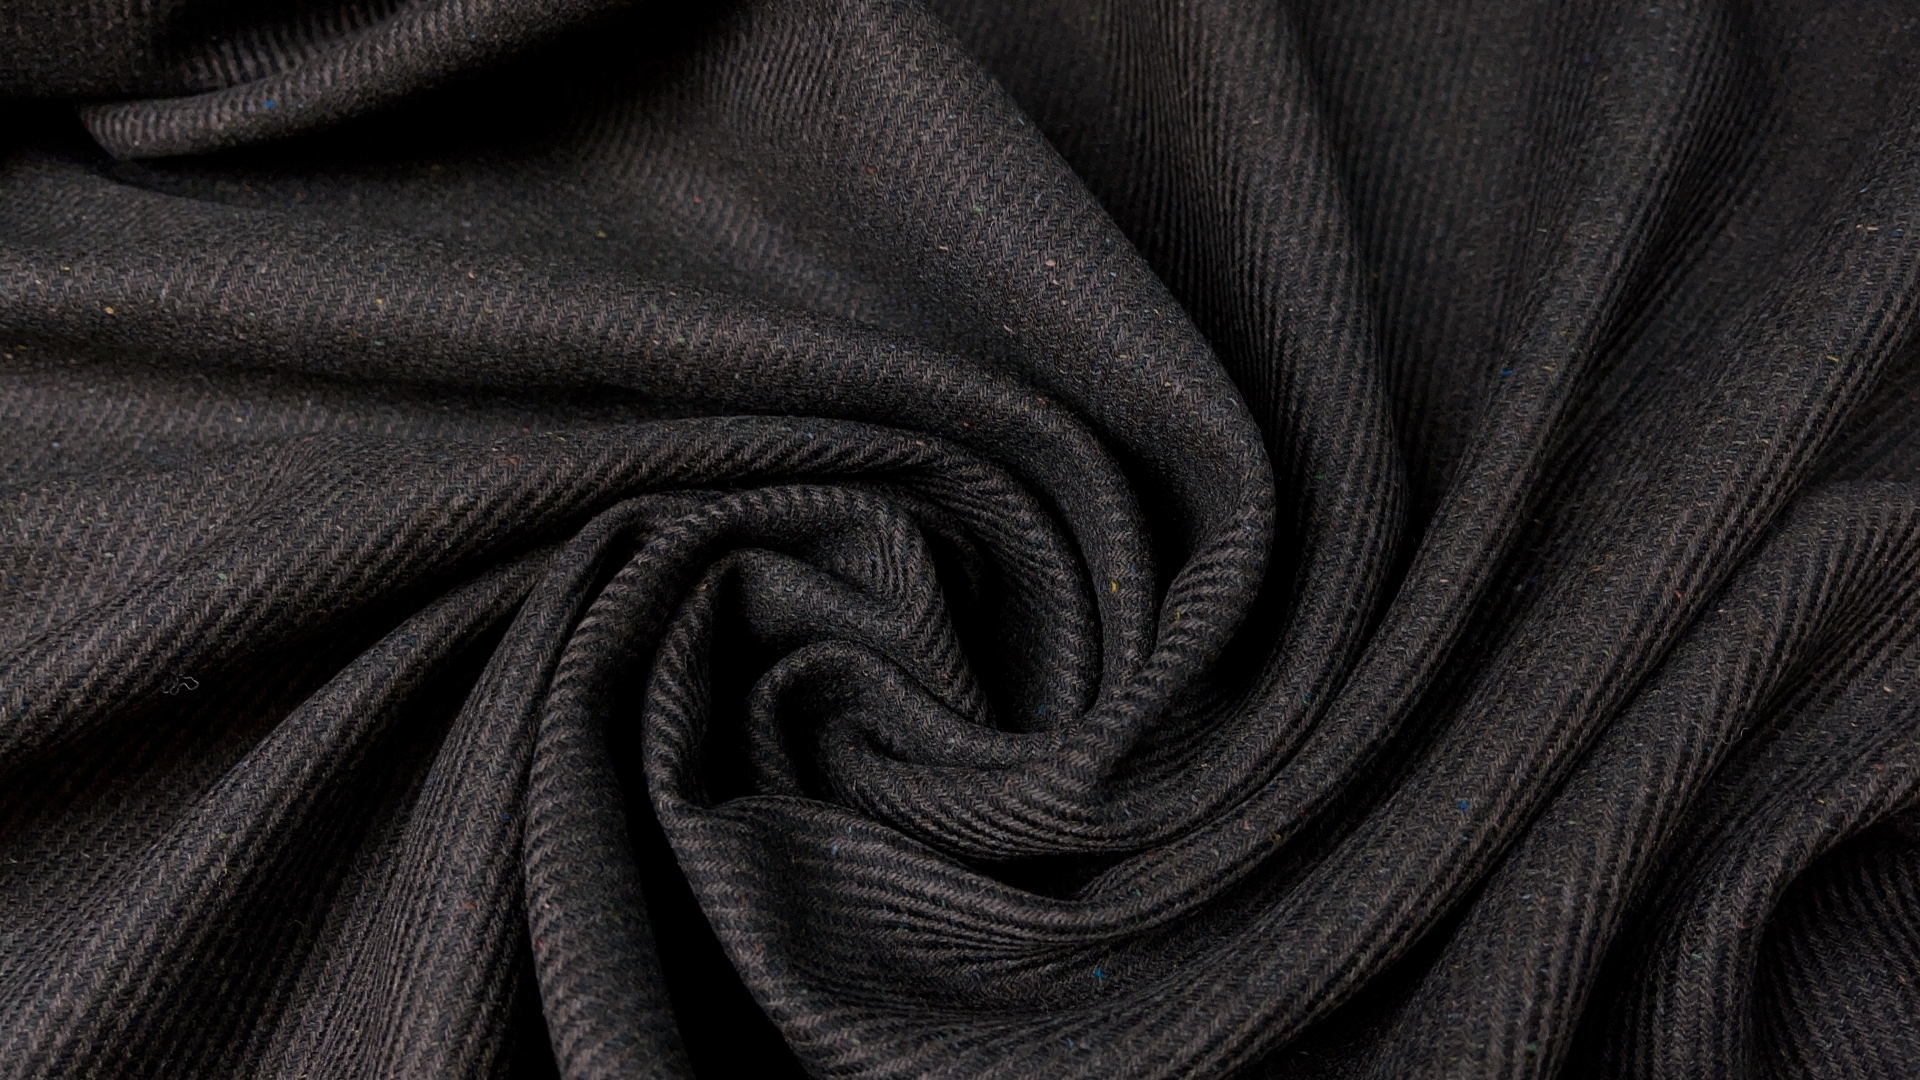 Пальтовая ткань коричневого оттенка с каплей оливы, плотность 445 гр м.п.  Полотно с лоском, выработка в диагональ. Для демисезонного пальто или теплой зимней юбки.